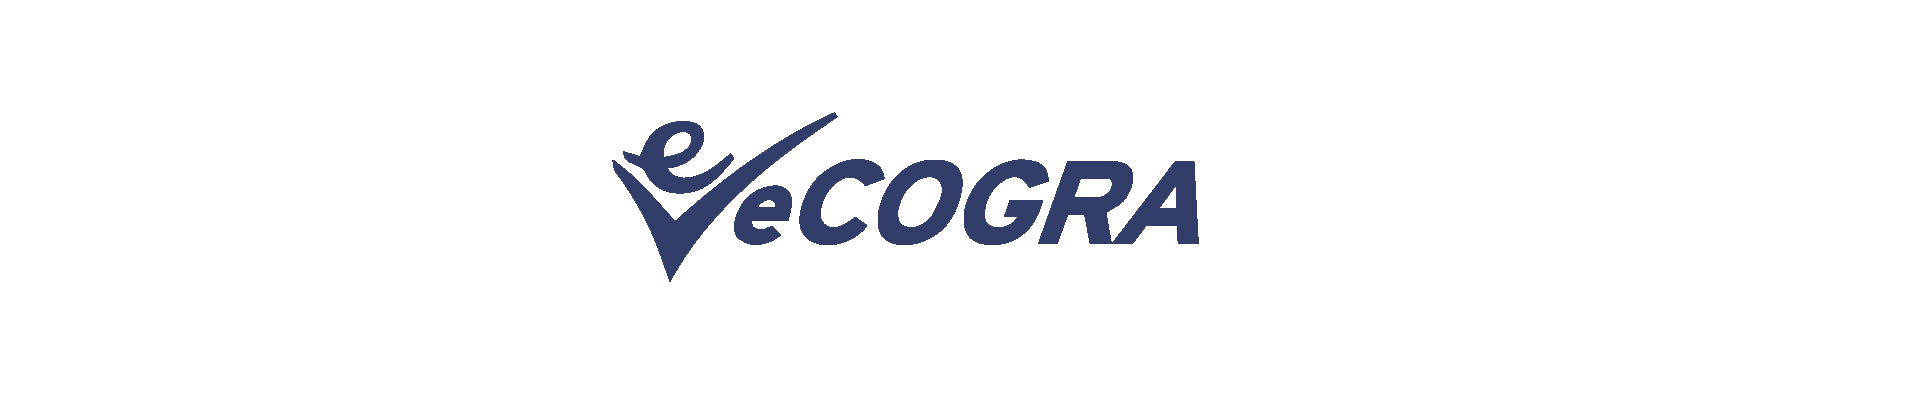 Правила получения сертификата eCogra для игорной лиценз logo для микроразметки